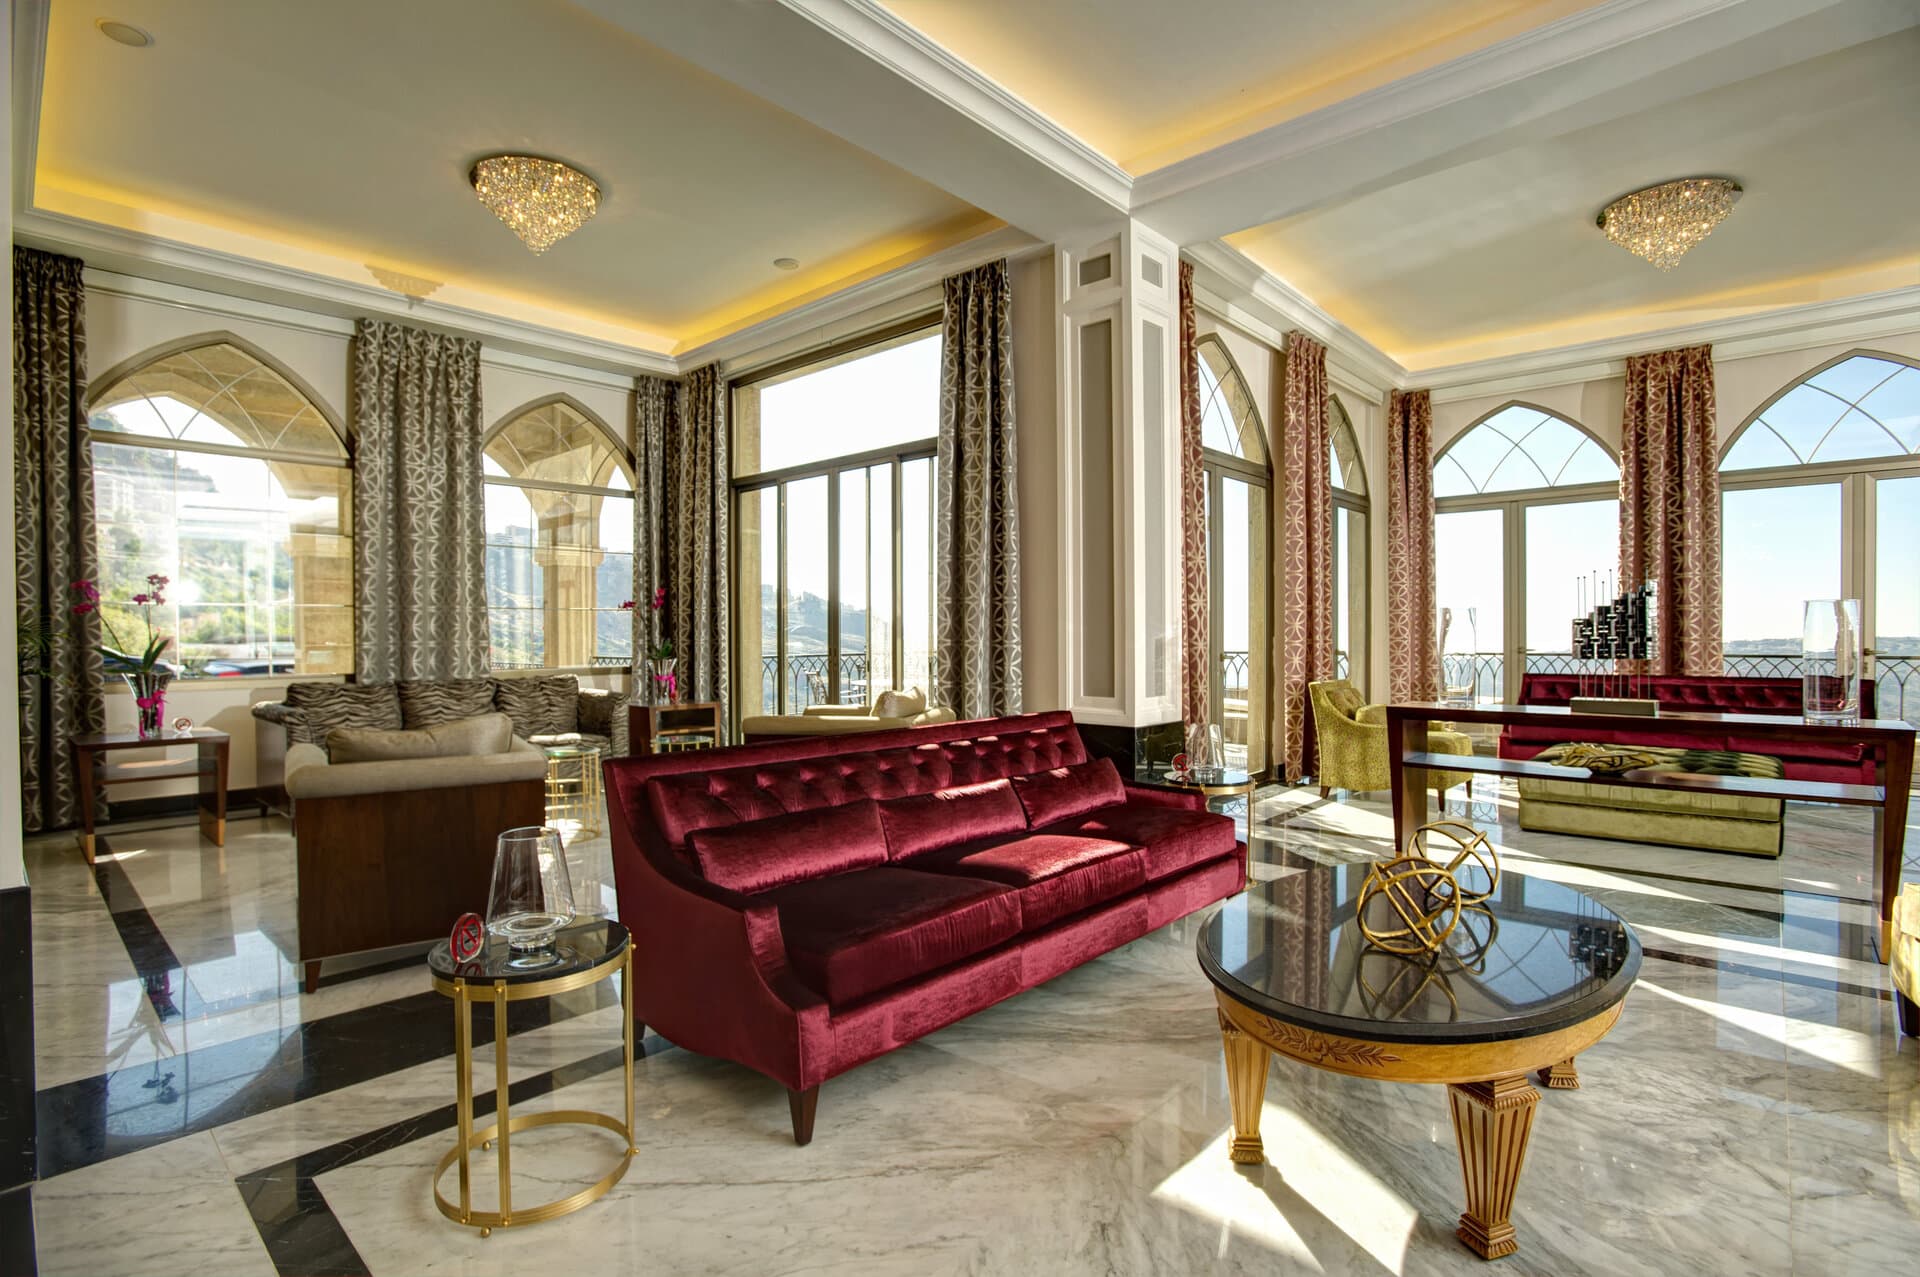 Stilvolles Hotelzimmer mit orientalischen Akzenten